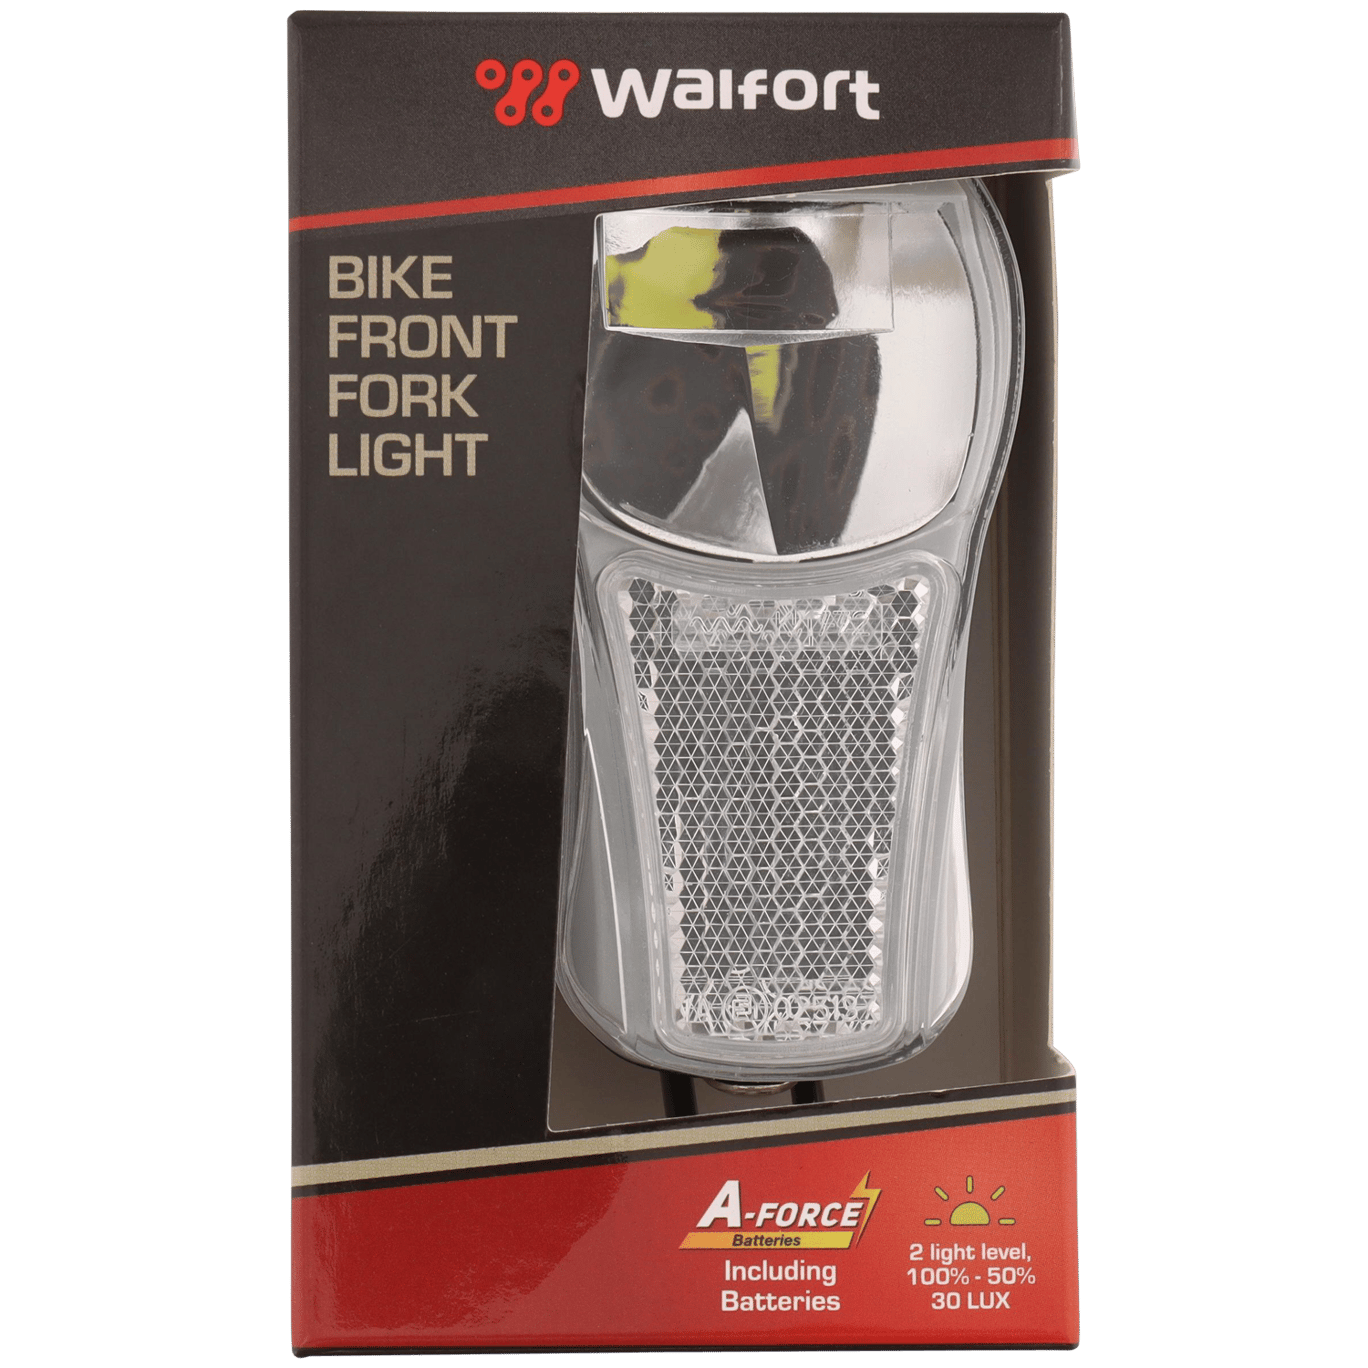 Meesterschap lens fax Walfort fietskoplamp | Action.com